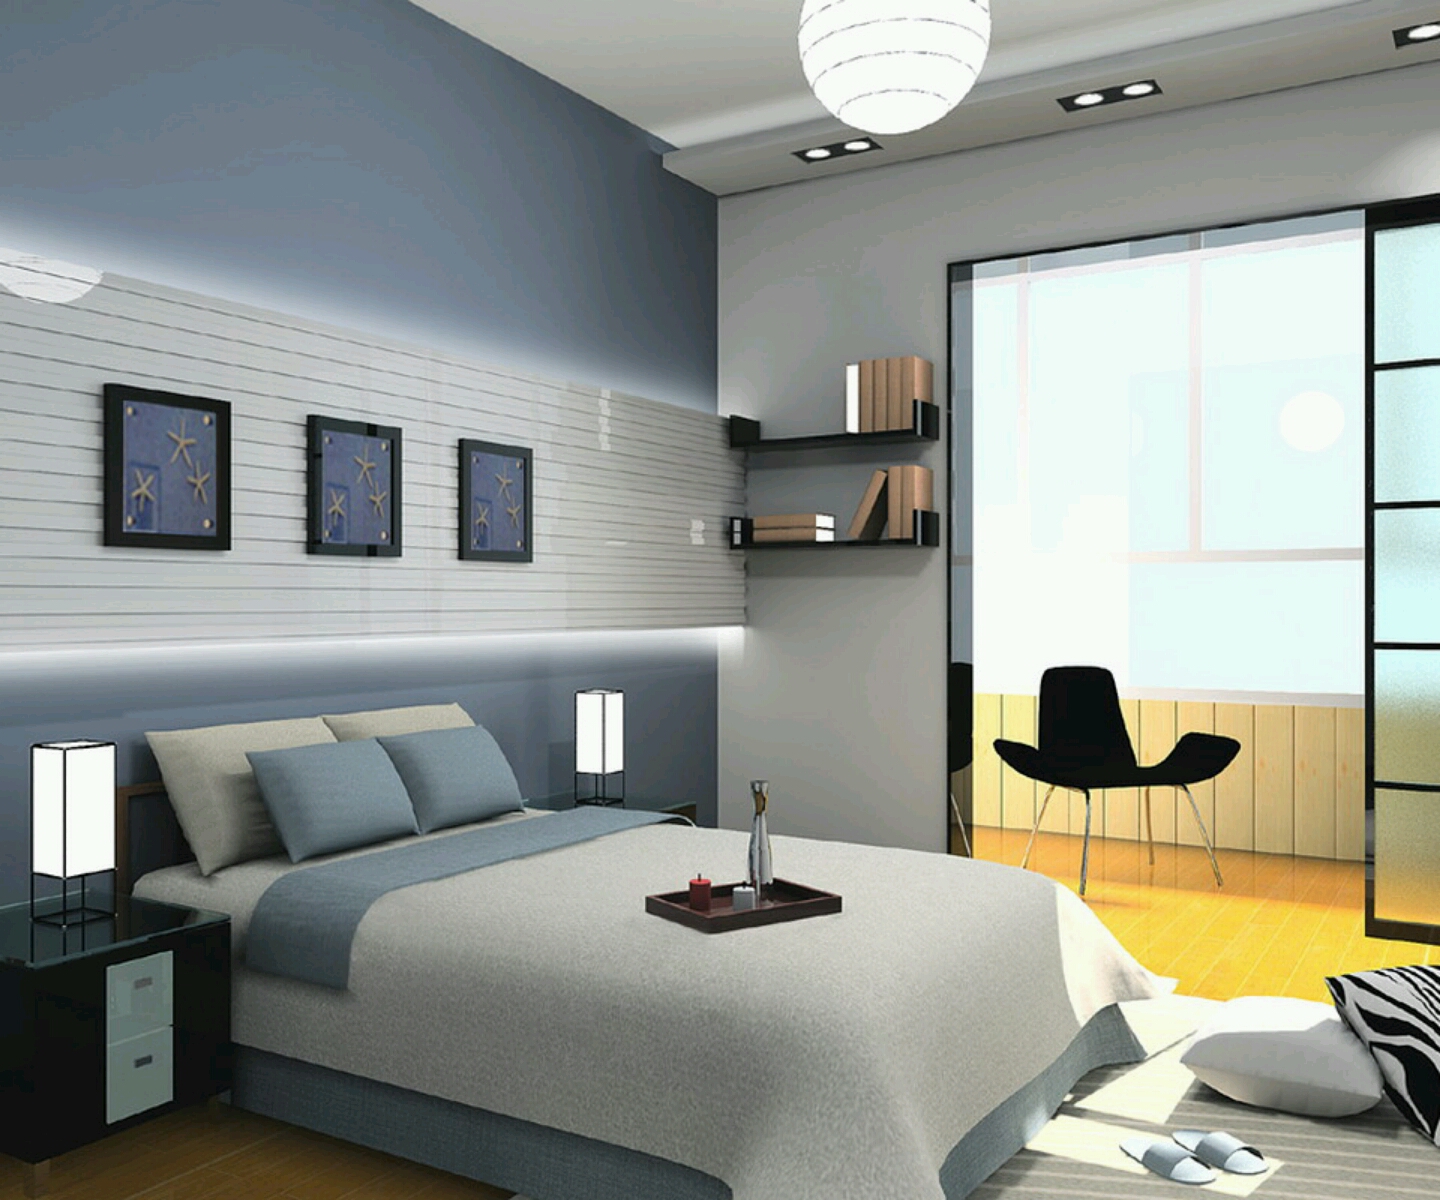 Apartment Hallway Design Ideas